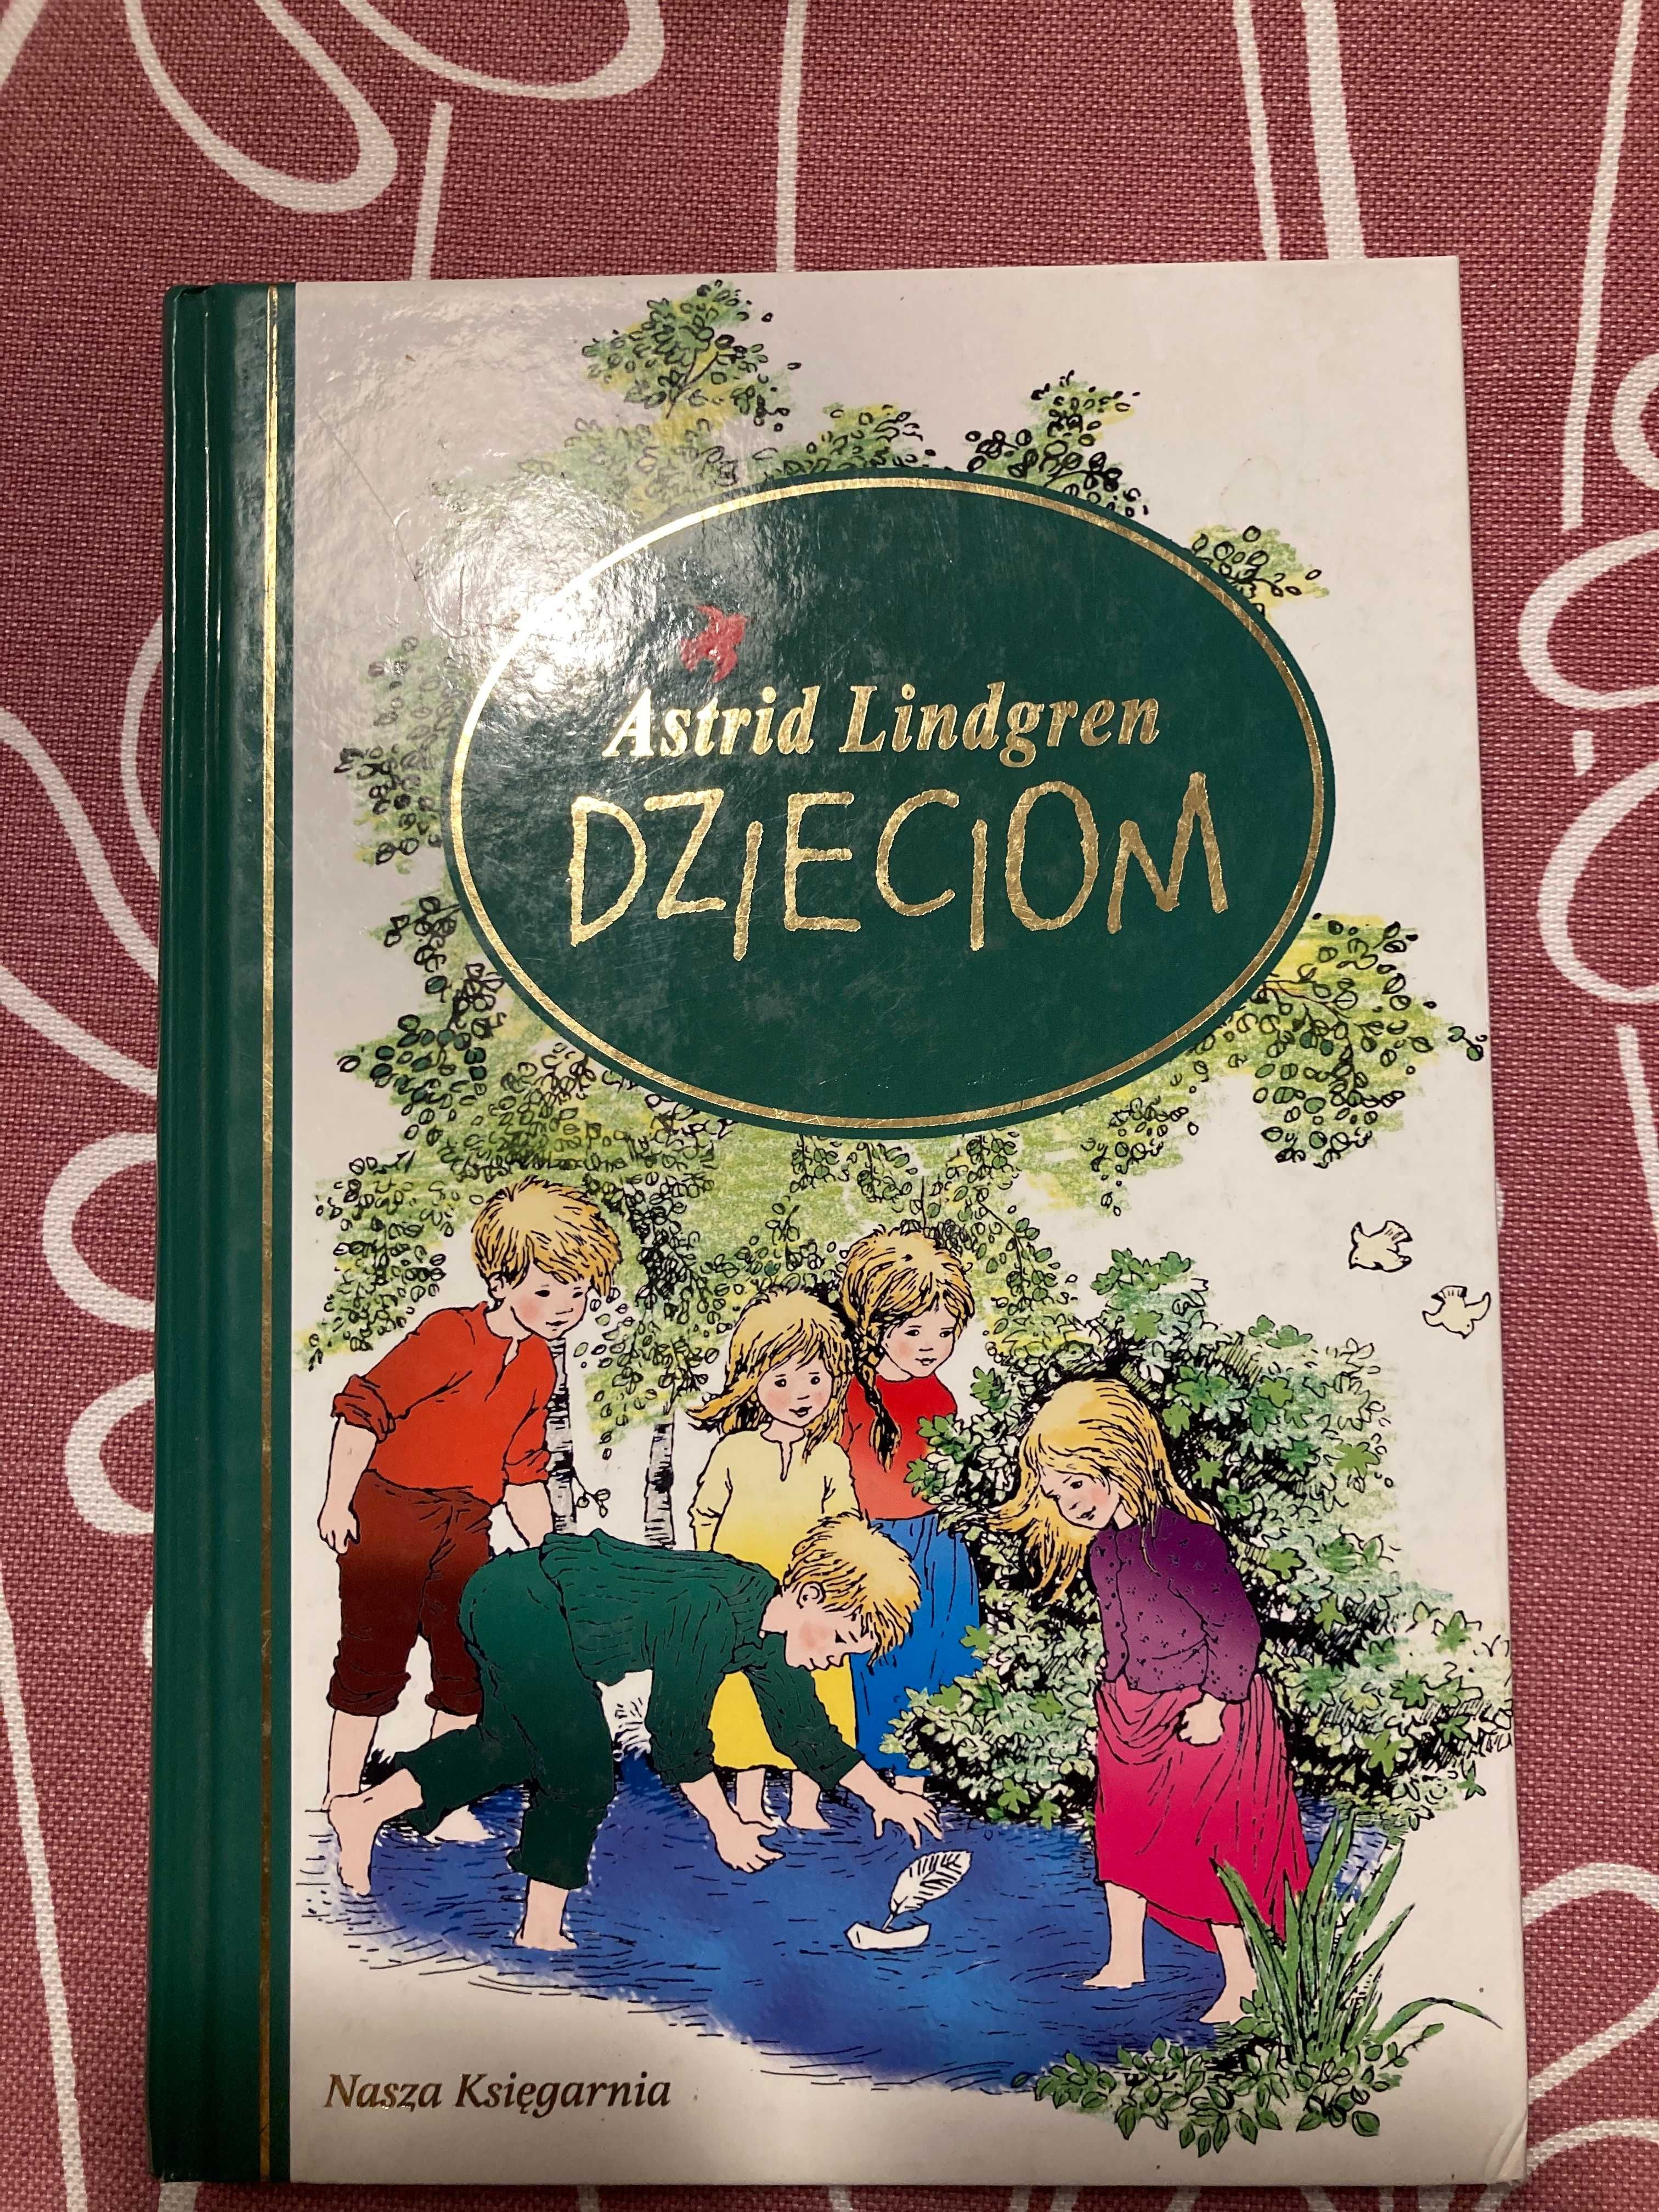 Książka Astrid Lindgren dzieciom